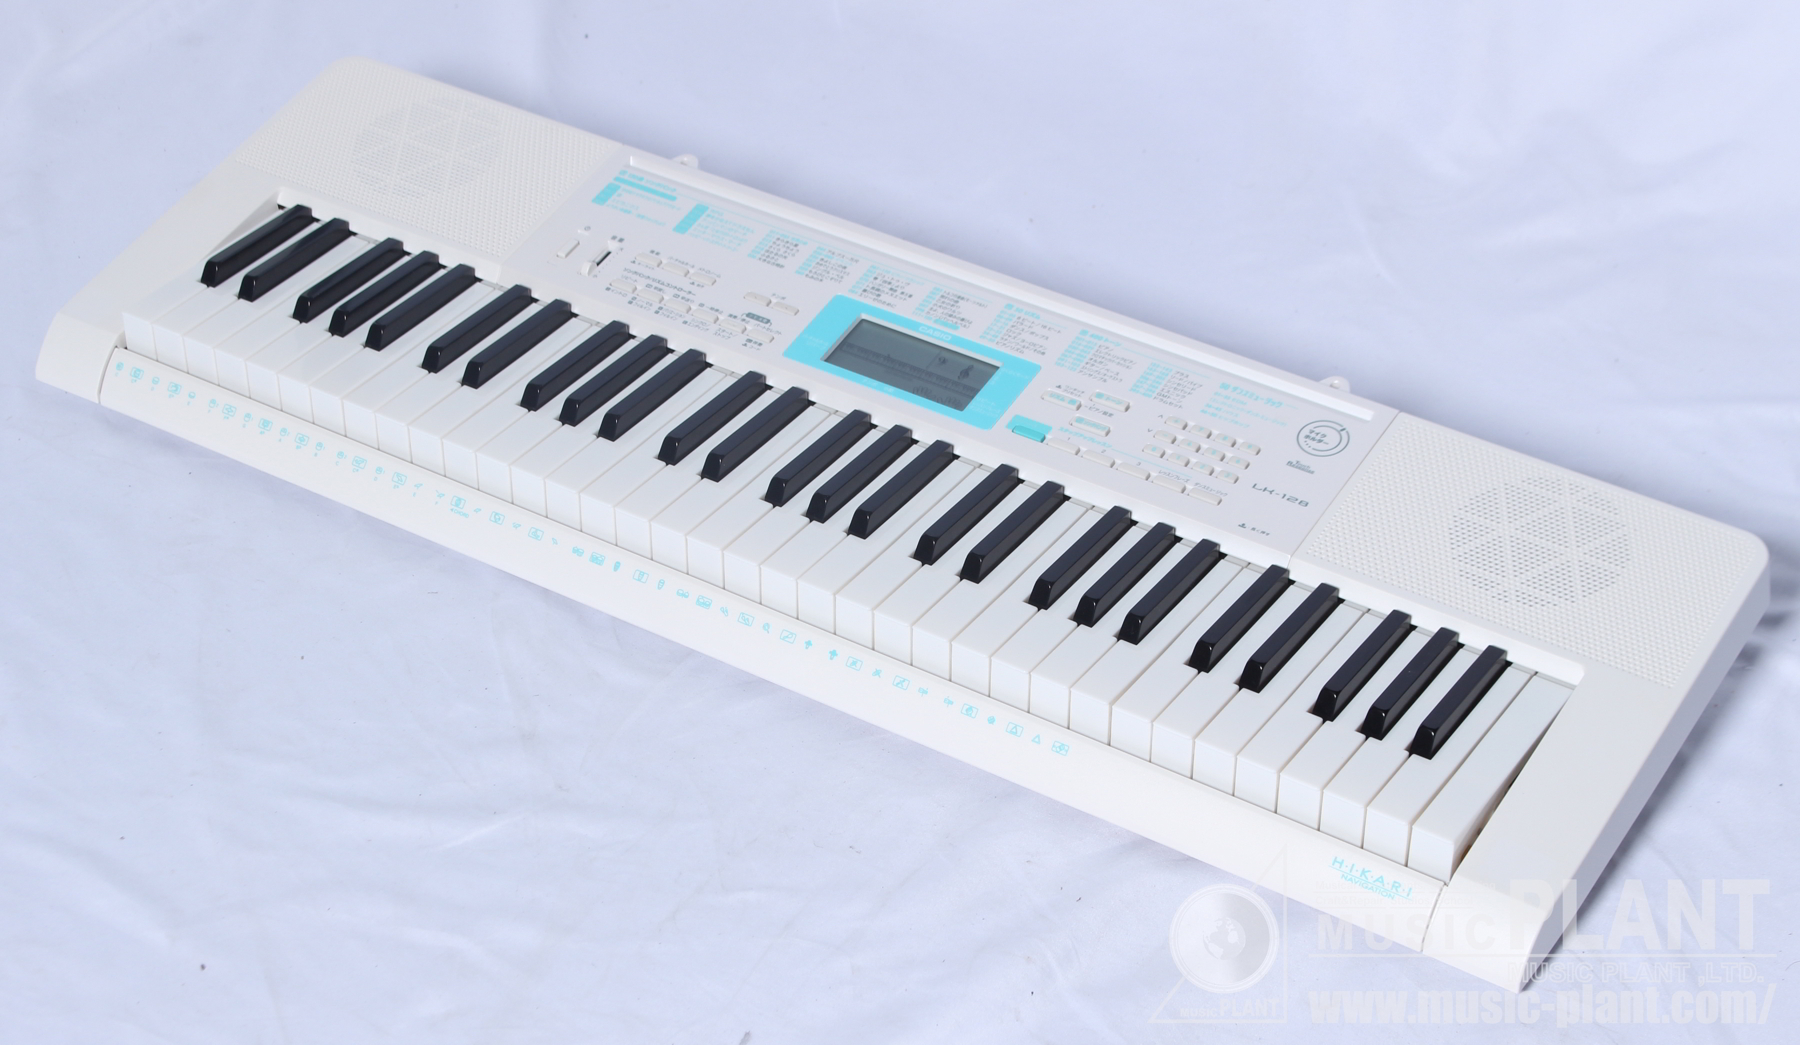 CASIO 光ナビゲーションキーボードLK-128中古品()売却済みです。あしからずご了承ください。 | MUSIC PLANT WEBSHOP